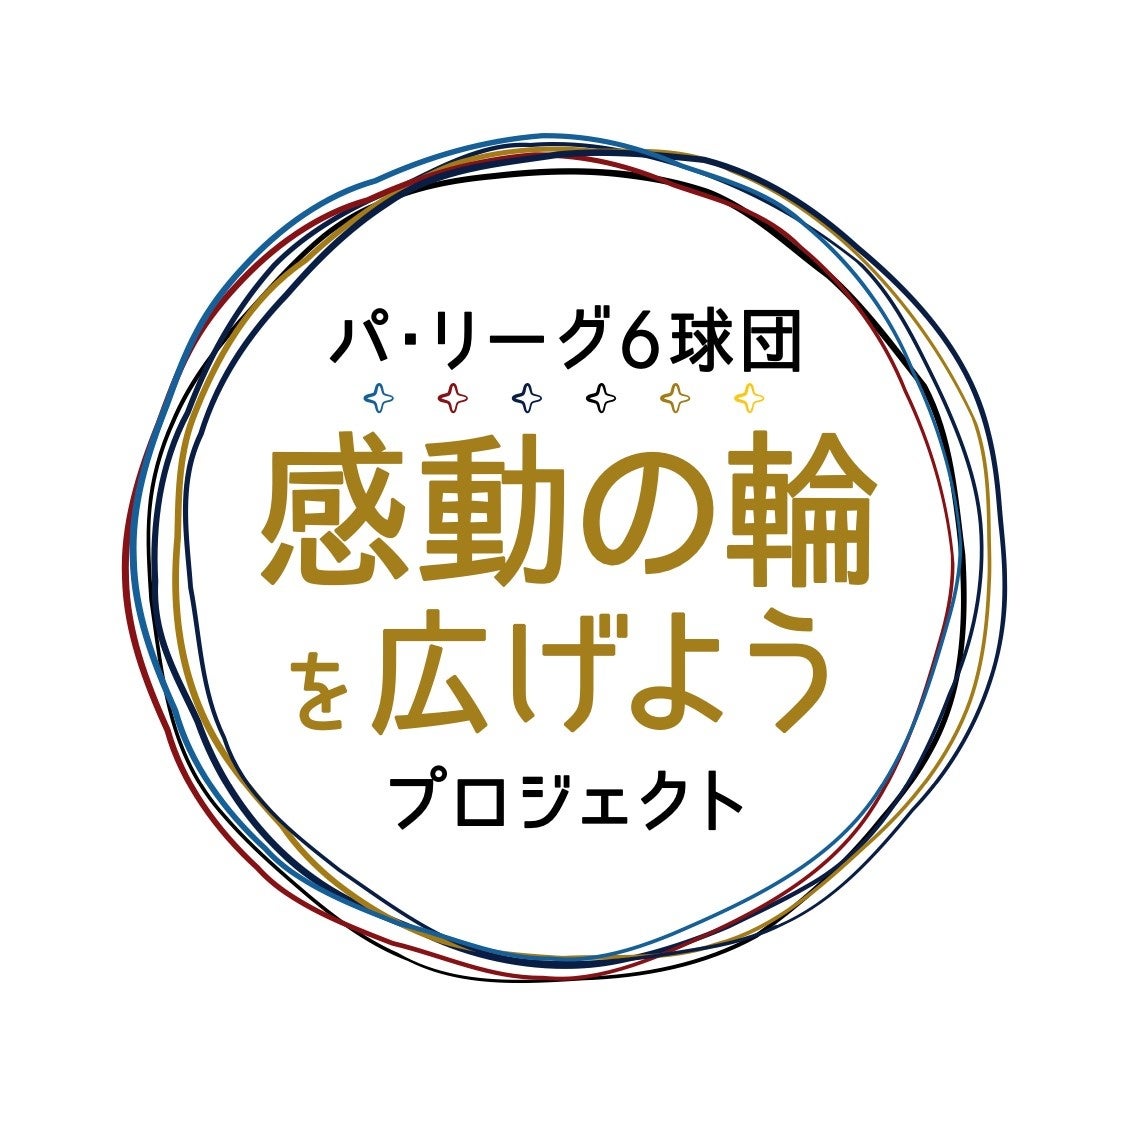 ネオジャパンは「横浜マラソン2022」に協賛します